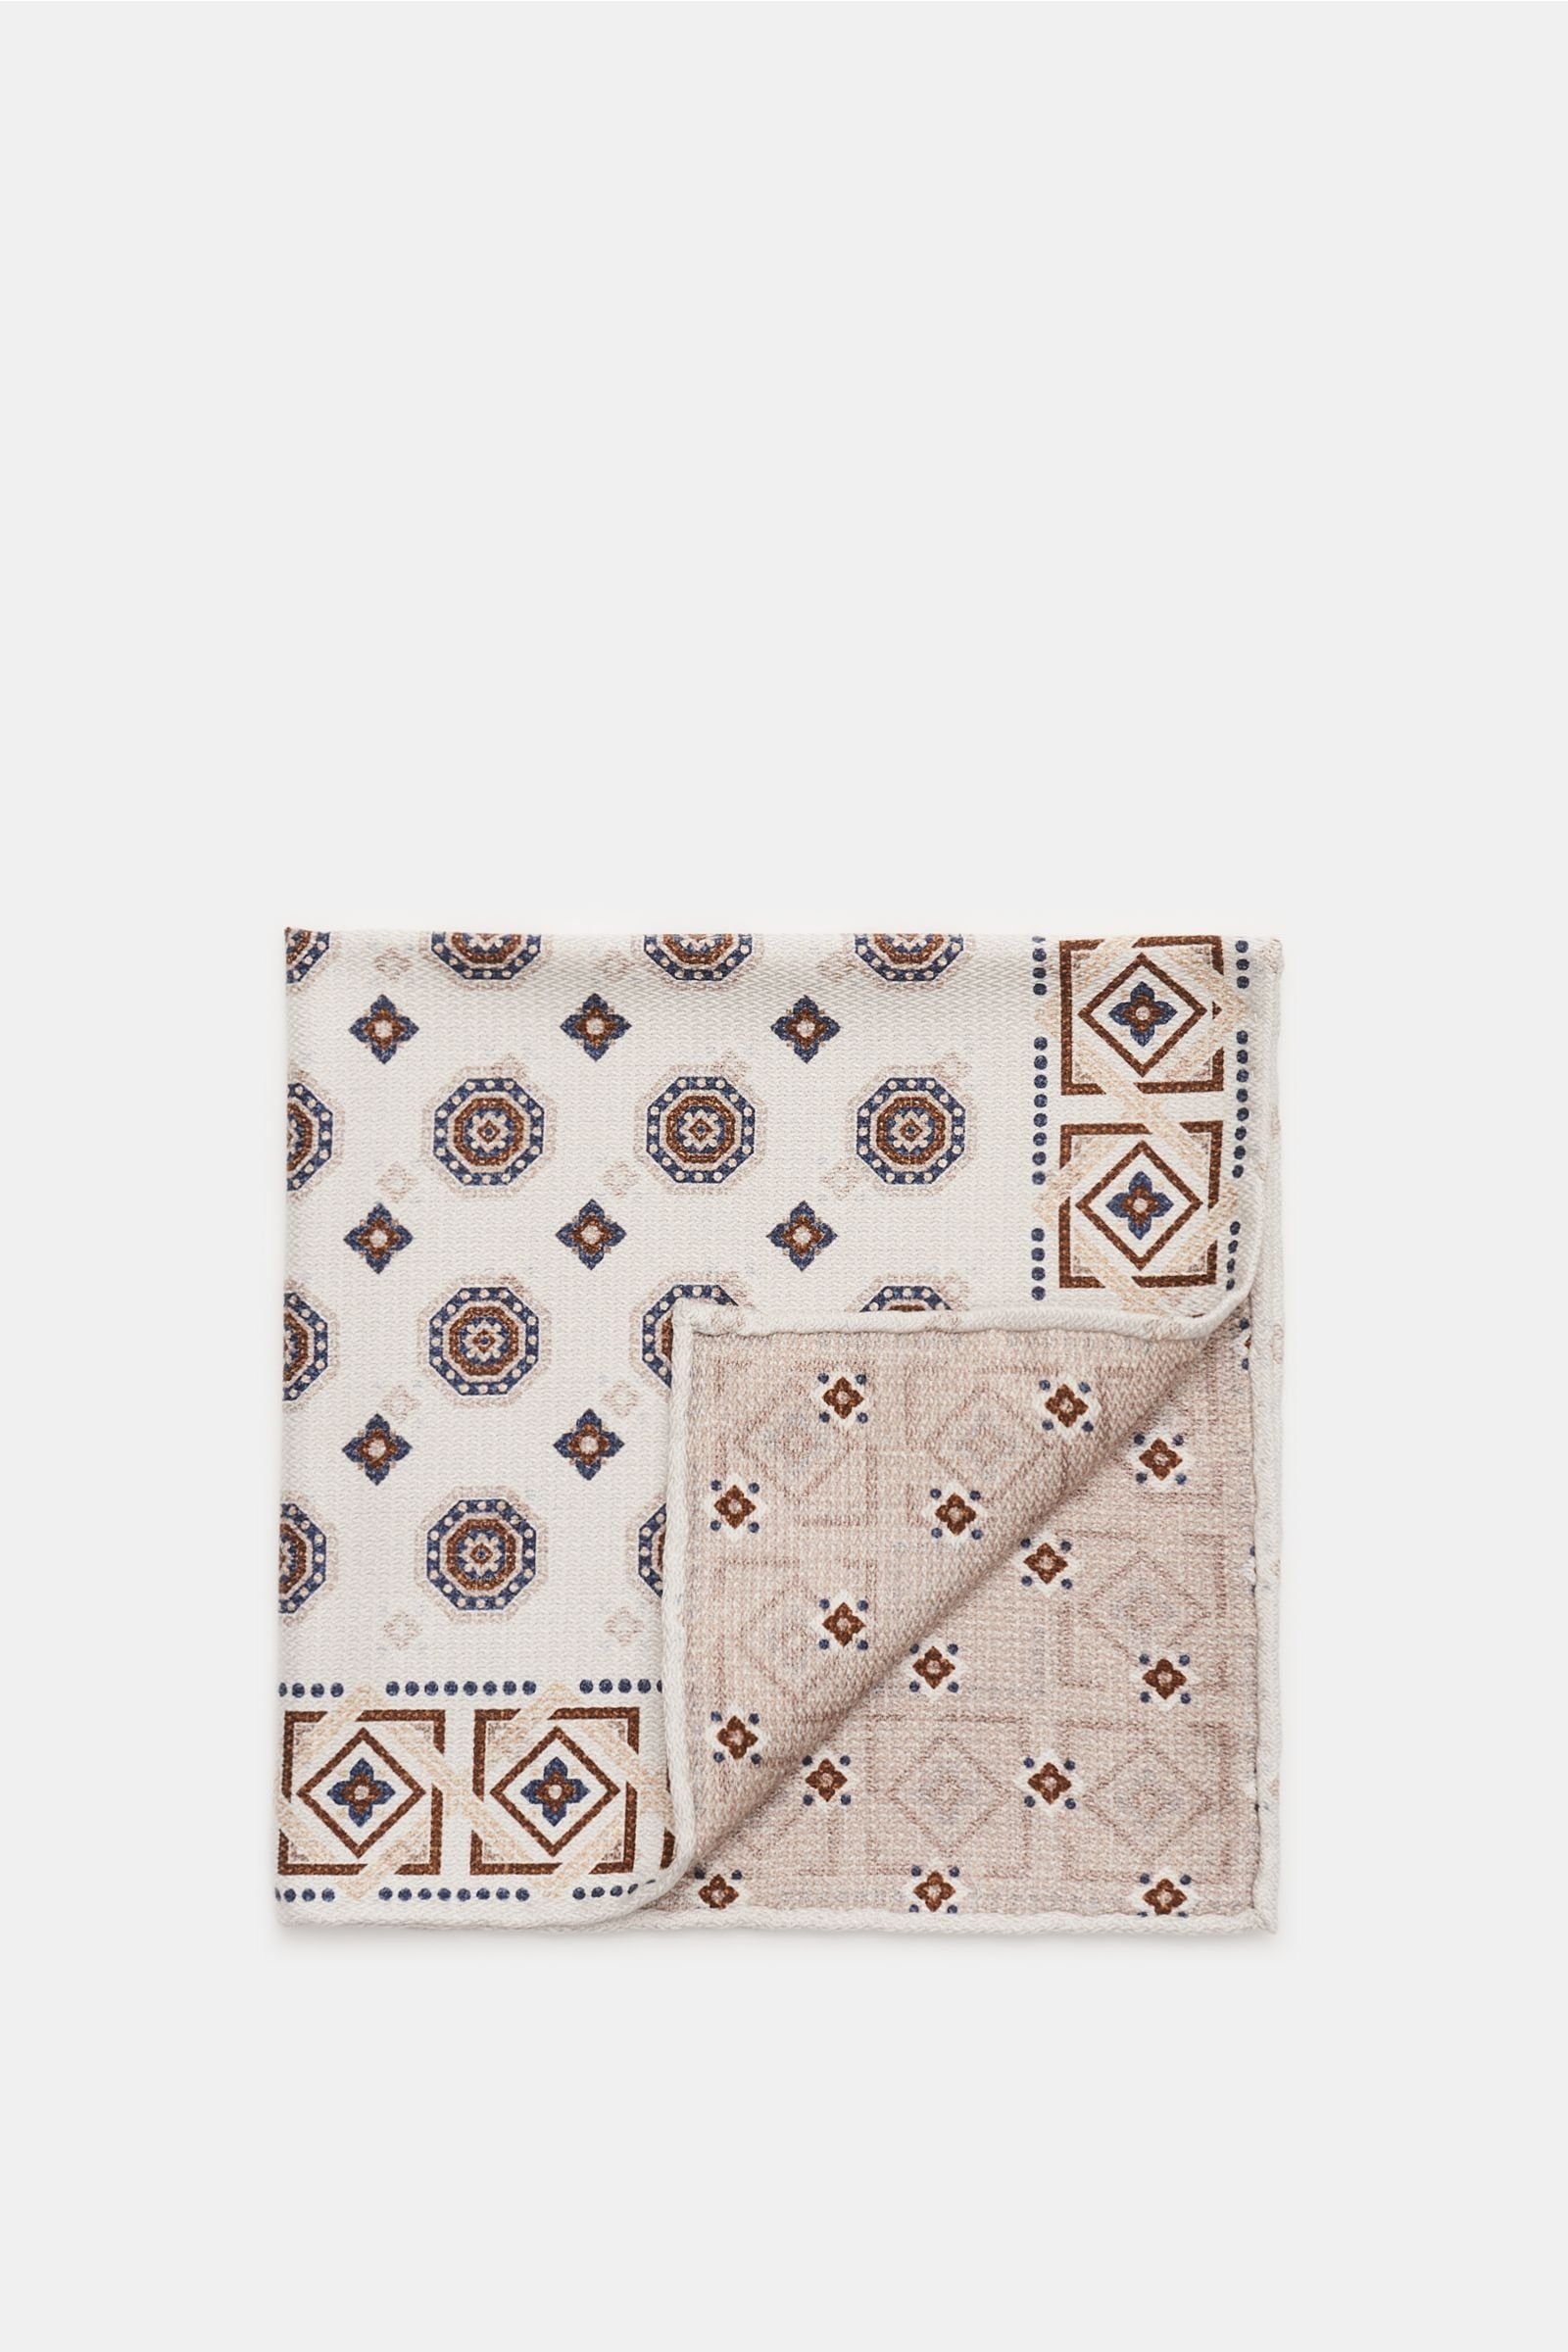 Pocket square off-white/beige patterned